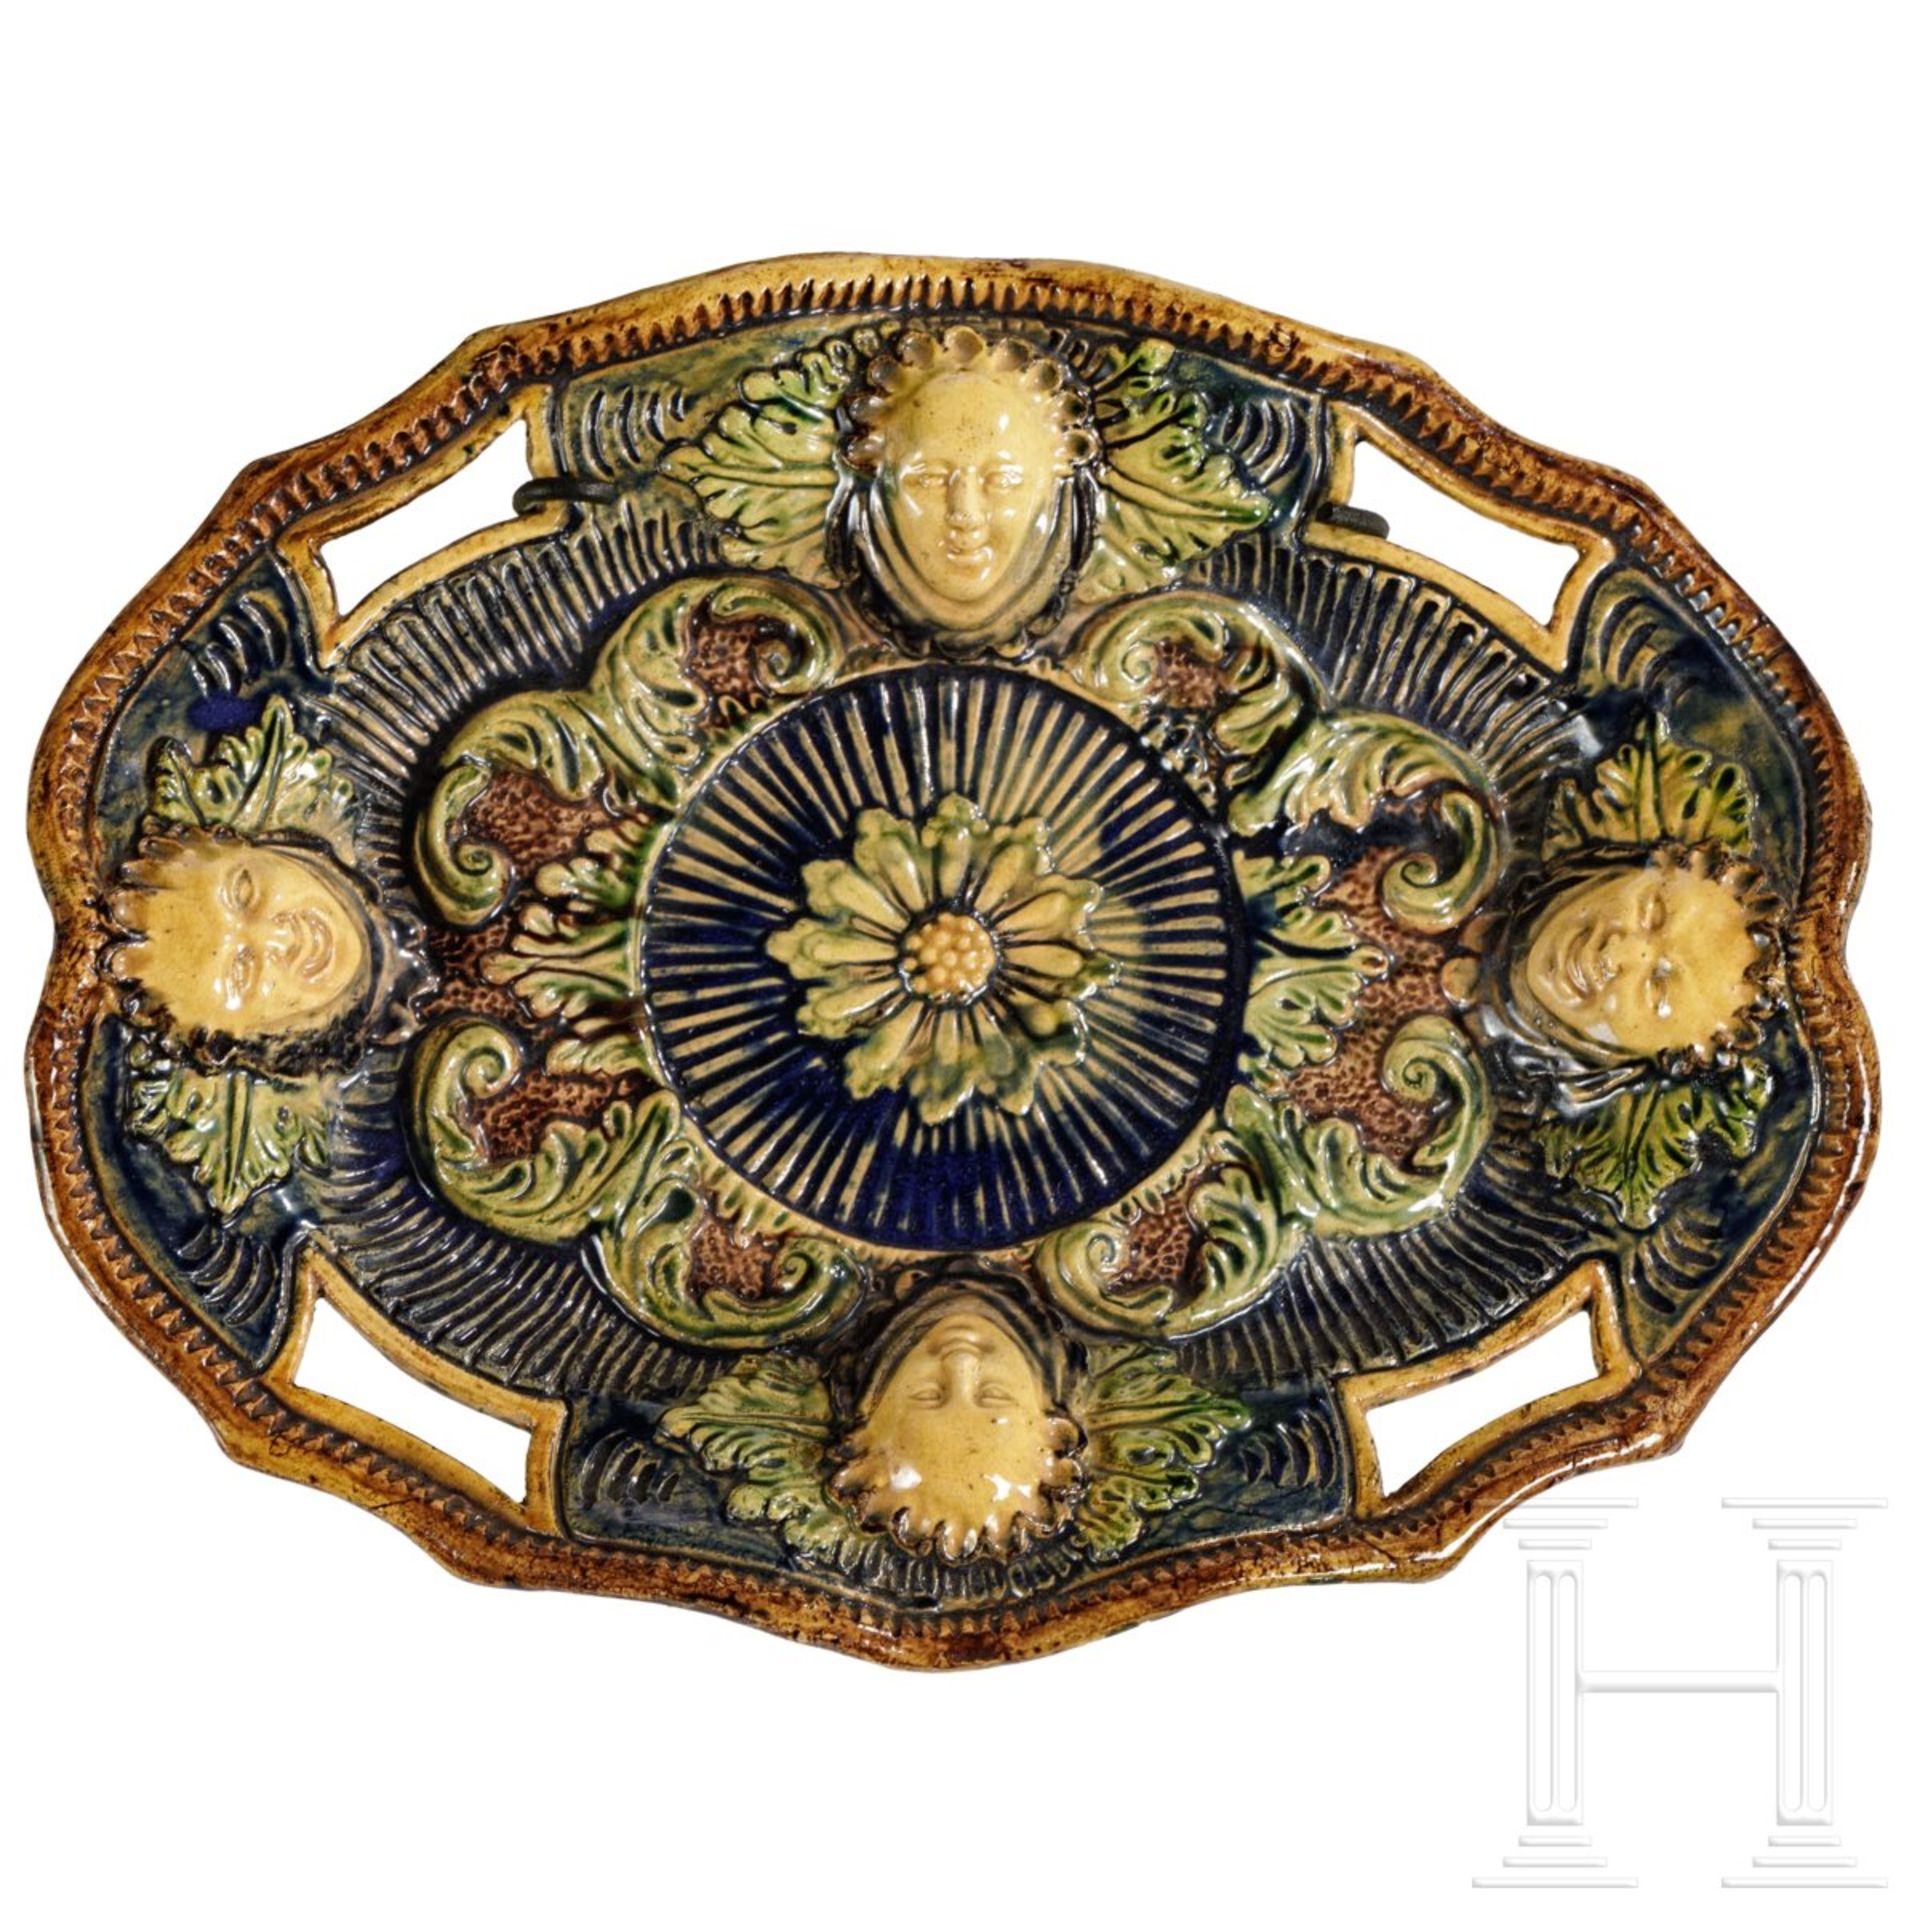 Ovale Fayence-Schale in der Art des George Palessy, Frankreich, um 1600